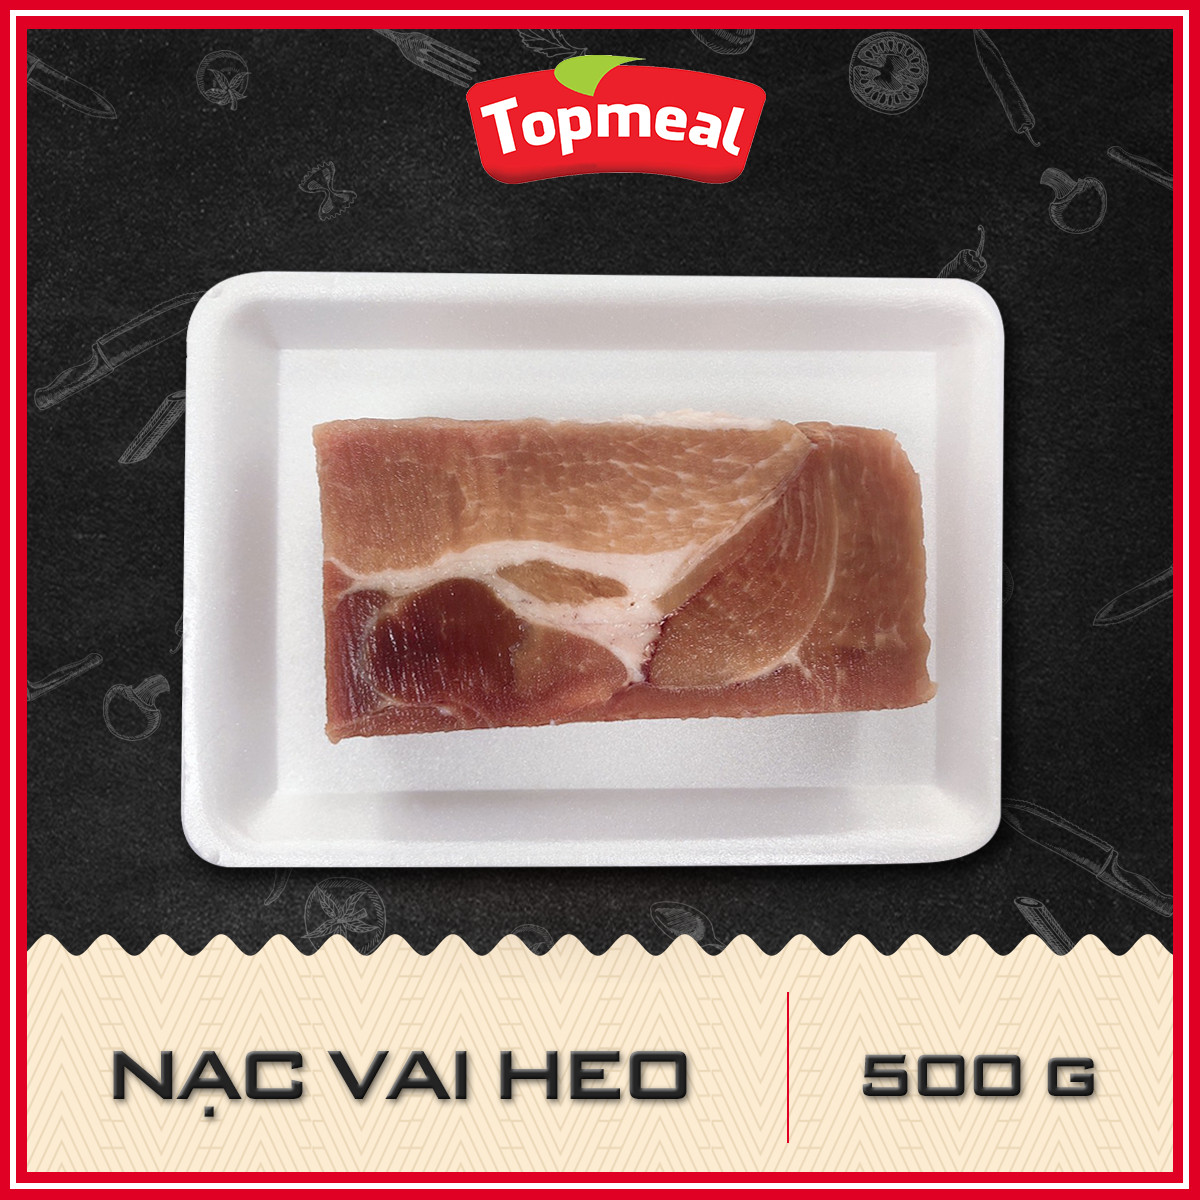 HCM - Thịt nạc vai heo (500g) - Thích hợp với các món luộc, chiên, nướng, kho,... - [Giao nhanh TPHCM]